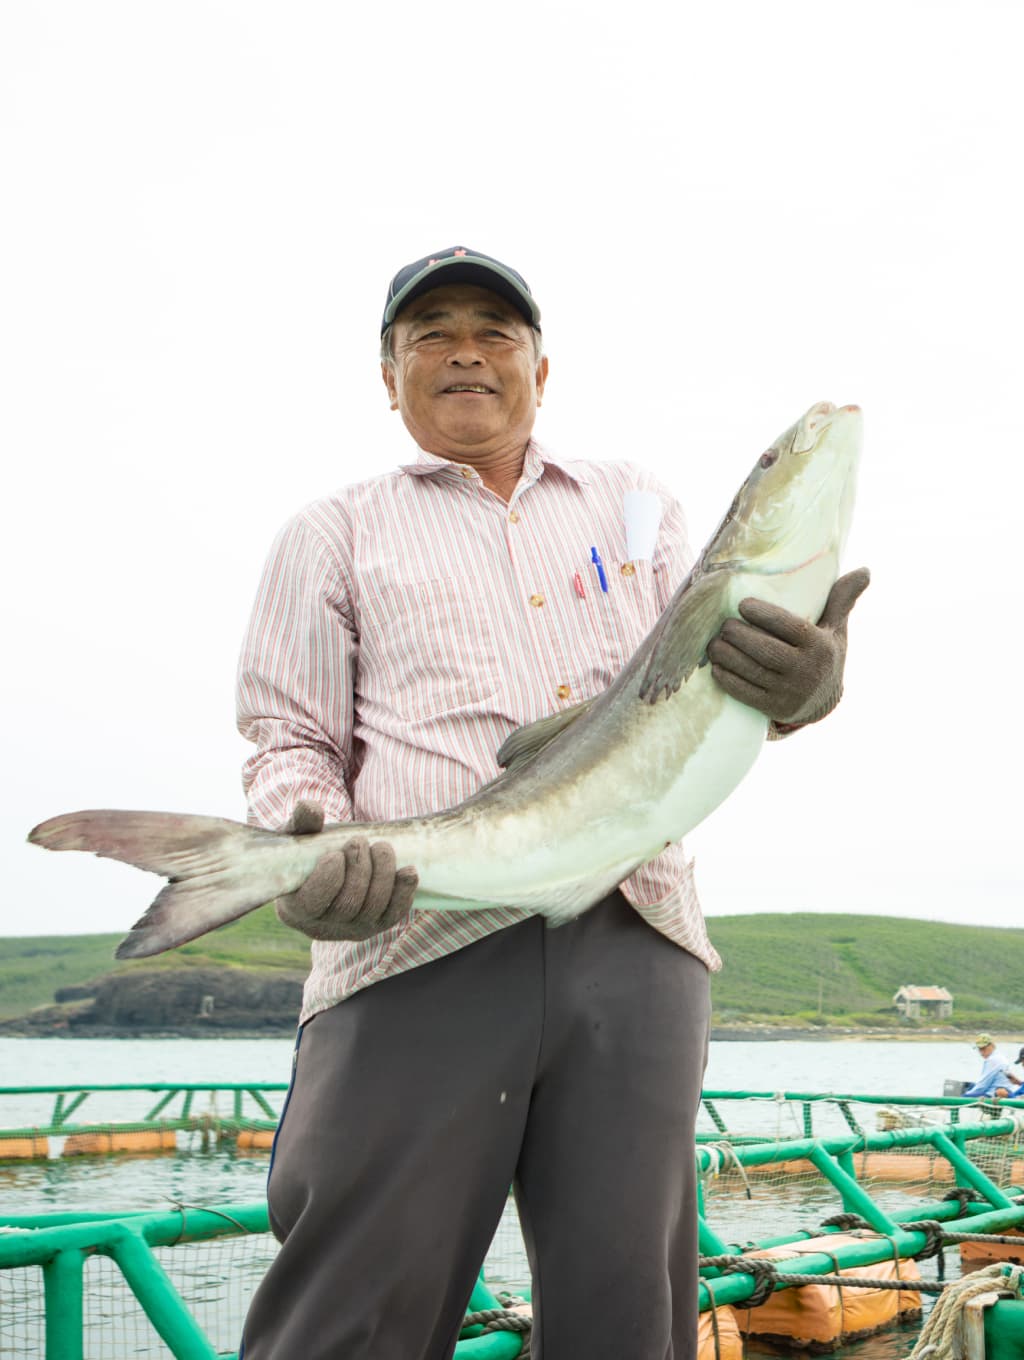 海洋台灣夢 澎湖 海上養魚 漁養澎湖高產值觀光也靠它 天下雜誌